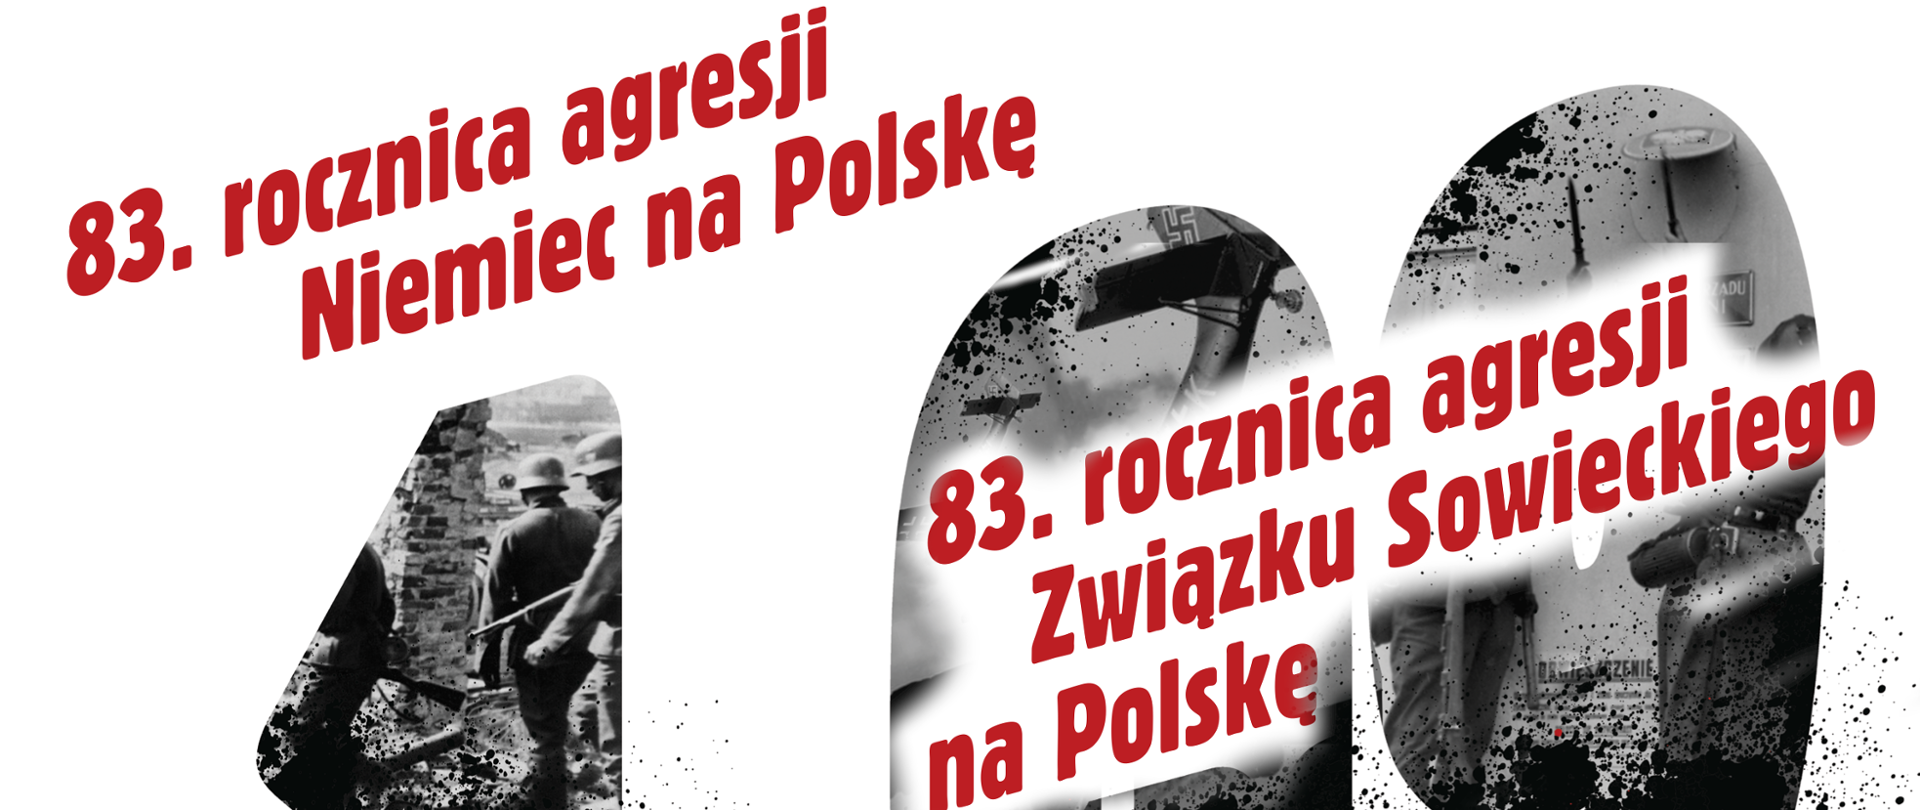 83. rocznica agresji Niemiec i Związku Sowieckiego na Polskę